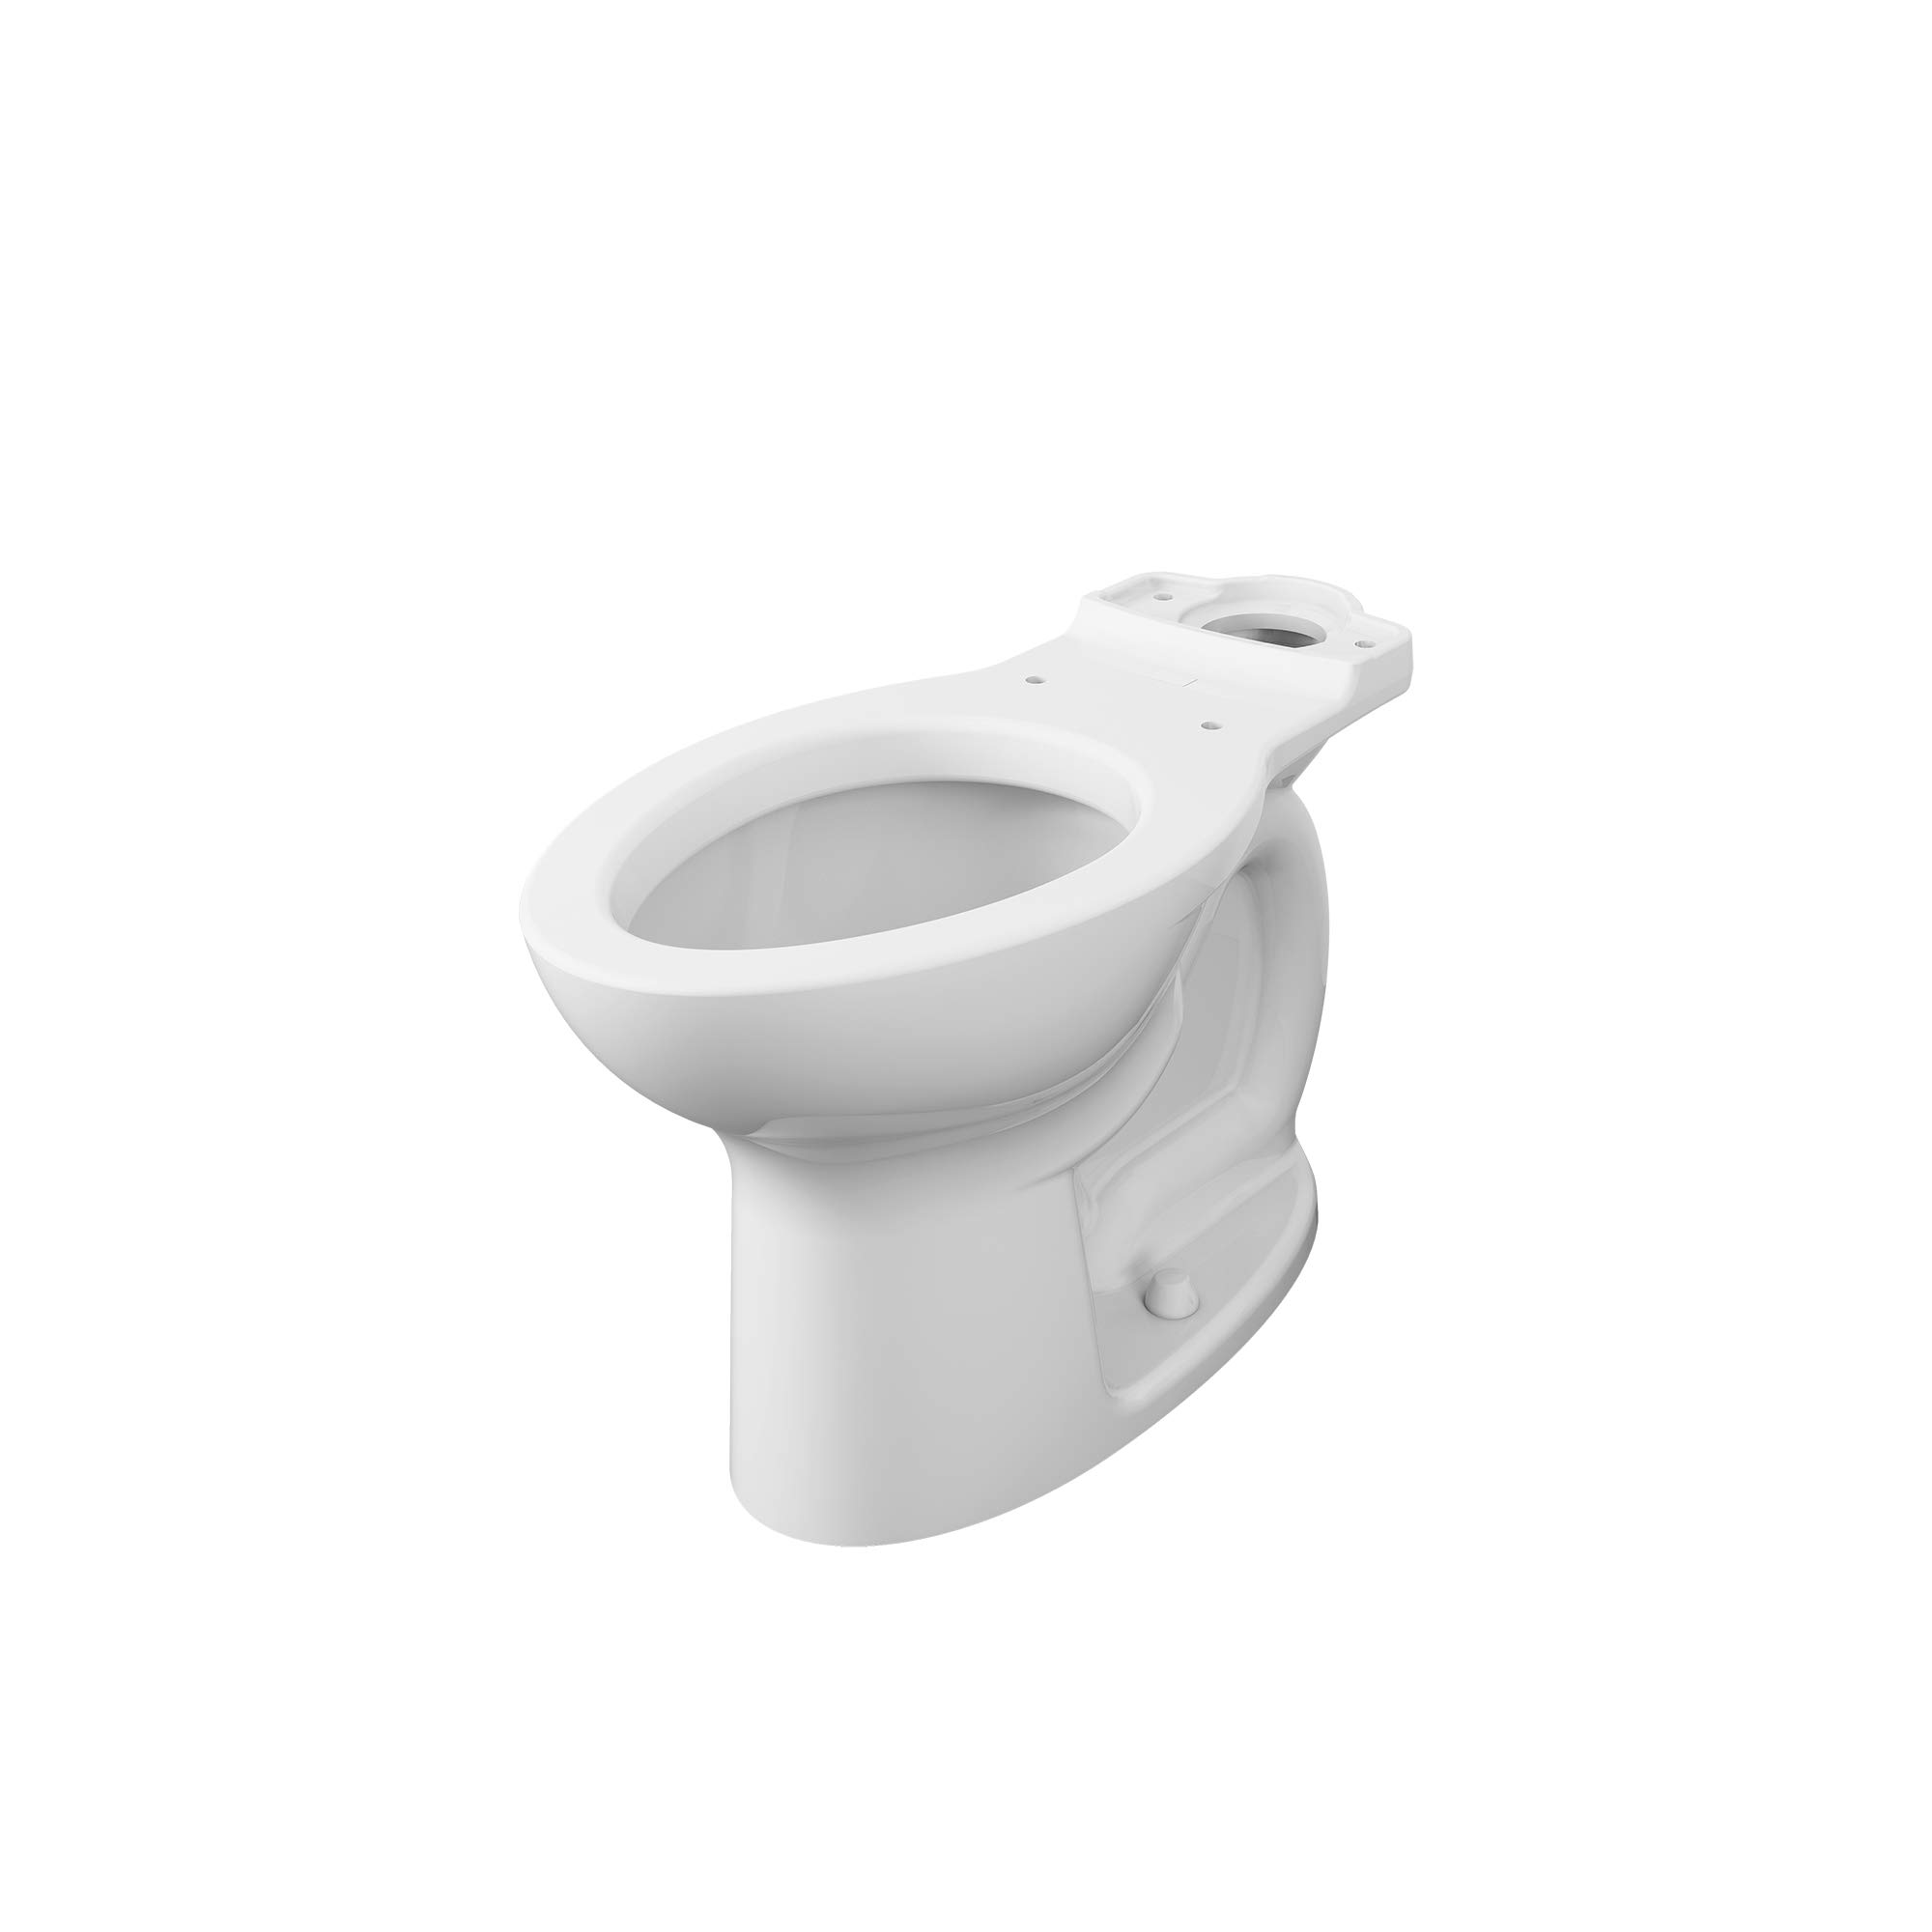 American Standard 3517A.101.020 Toilet Bowl, White